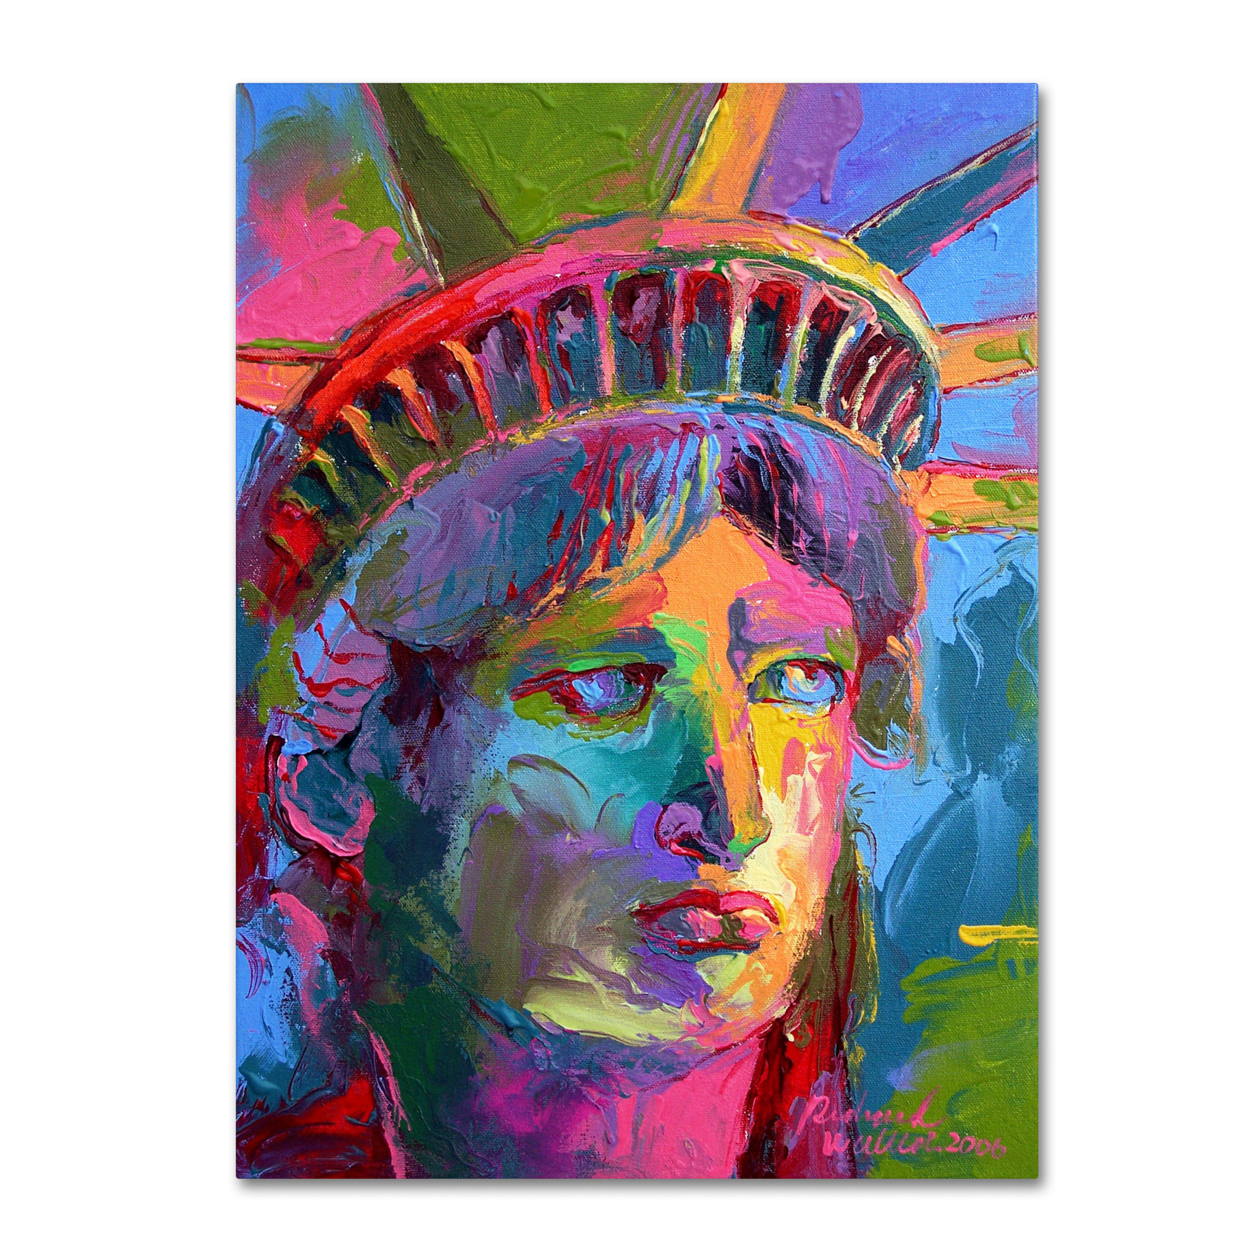 Richard Wallich 'Lady Liberty 2' Canvas Wall Art 35 X 47 Inches